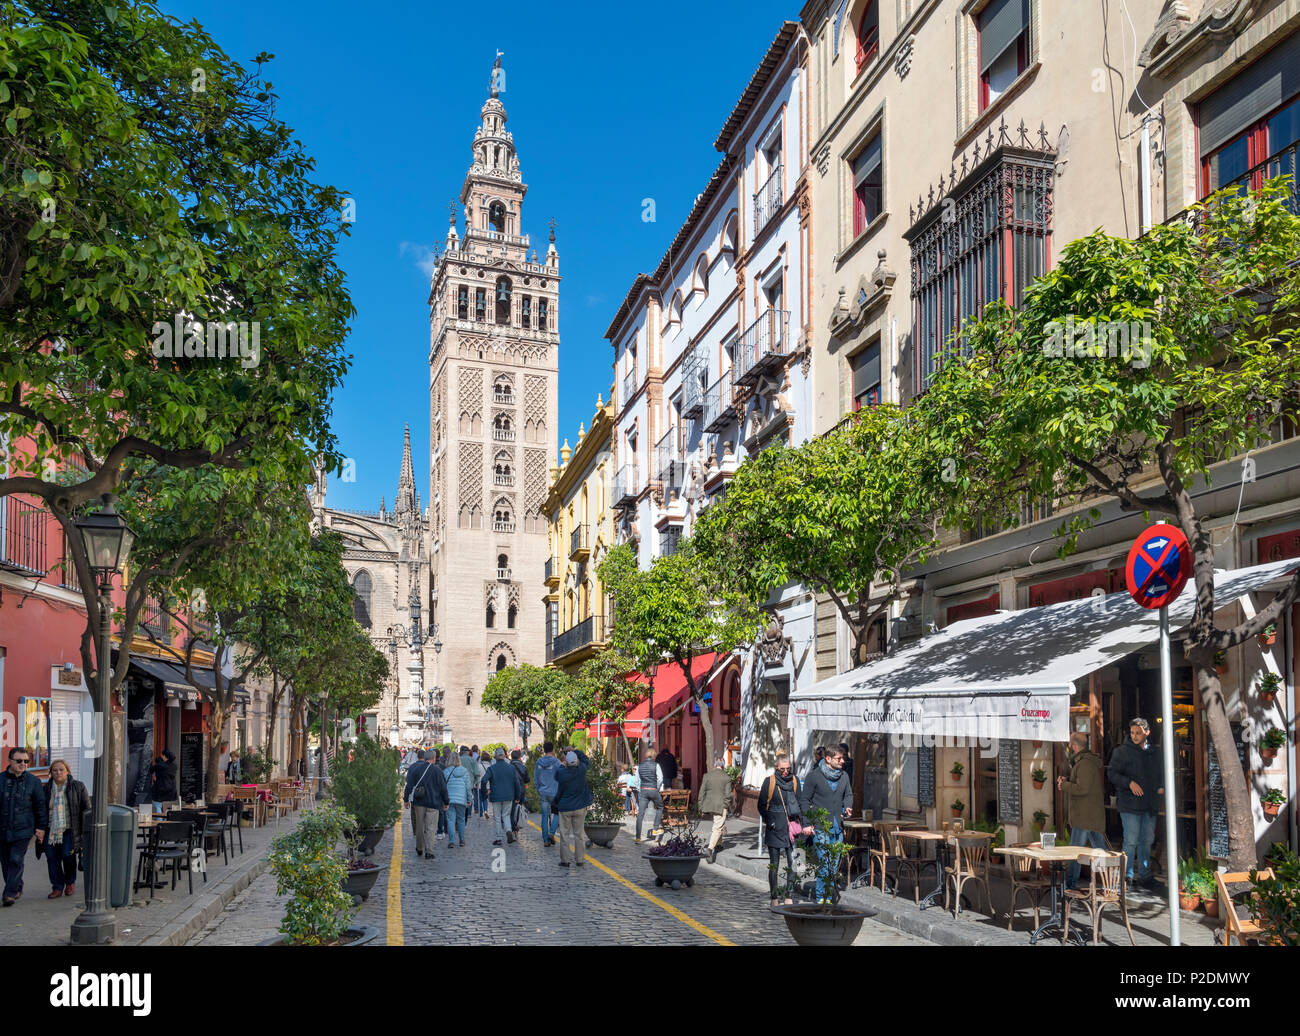 Siviglia, Spagna. Caffè in calle Mateos Gago guardando verso la torre Giralda e la Cattedrale, Sevilla, Spagna Foto Stock